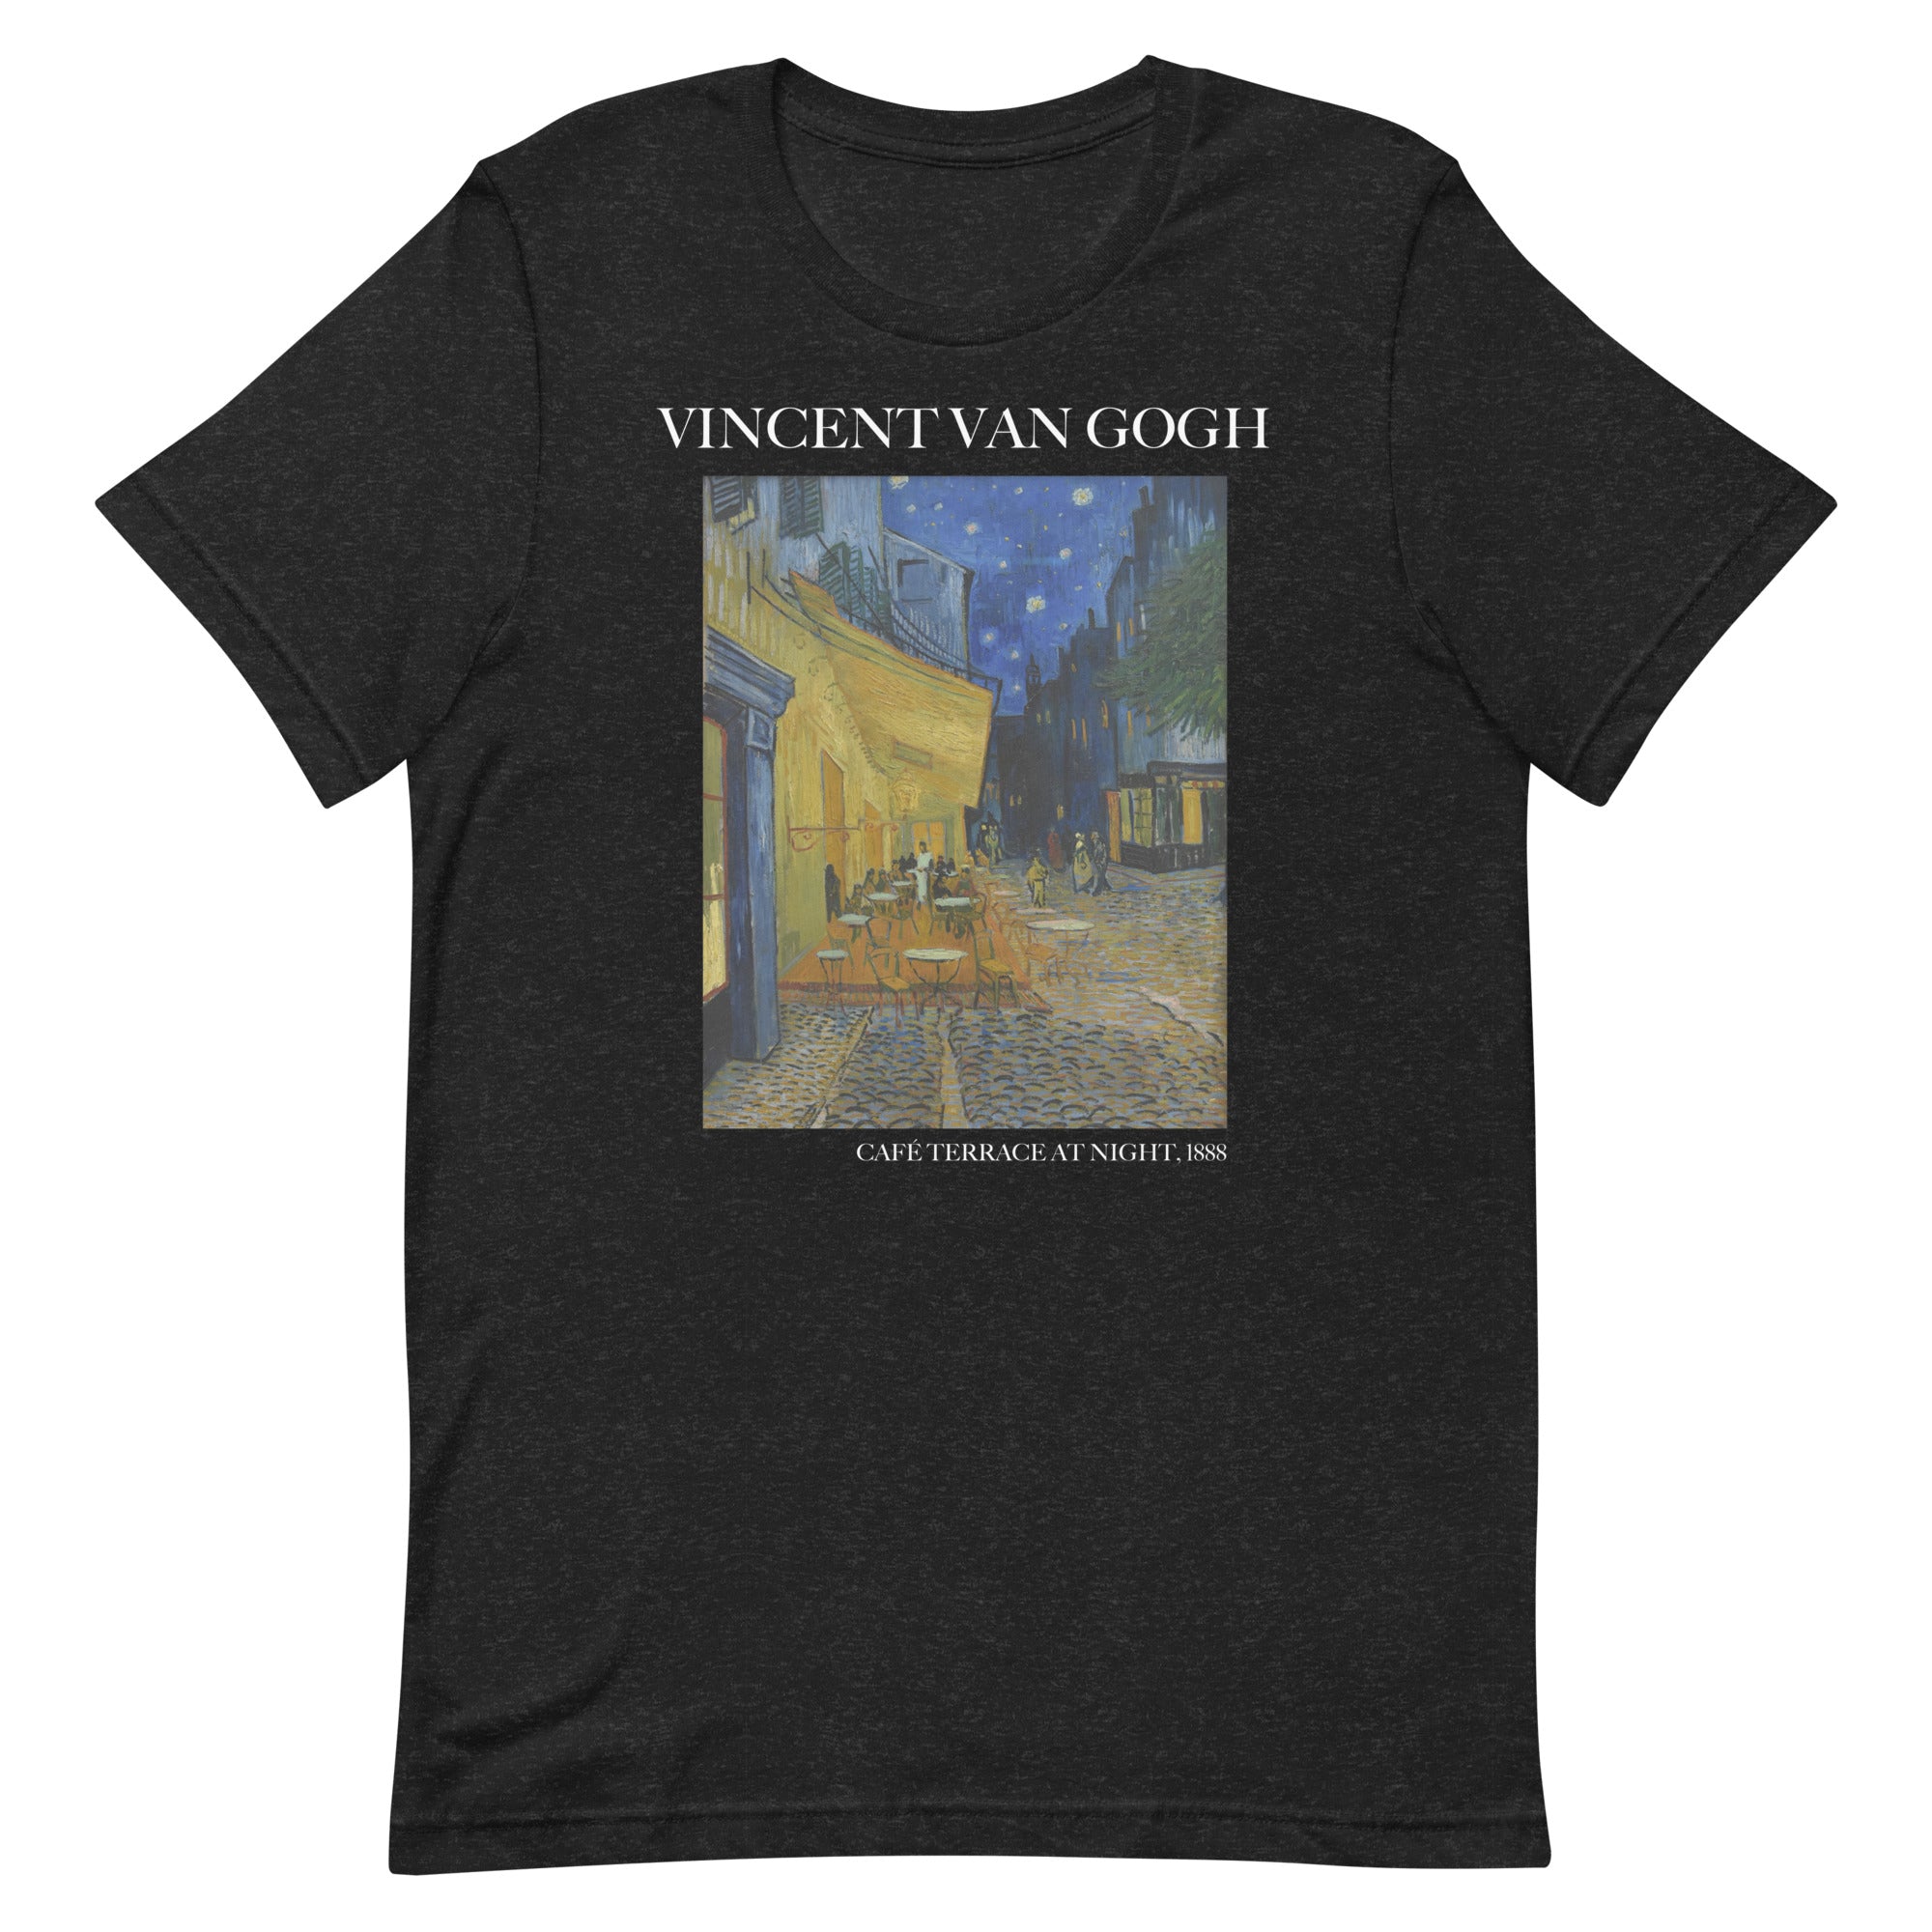 Vincent van Gogh 'Café Terrace at Night' Famous Painting T-Shirt | Unisex Classic Art Tee